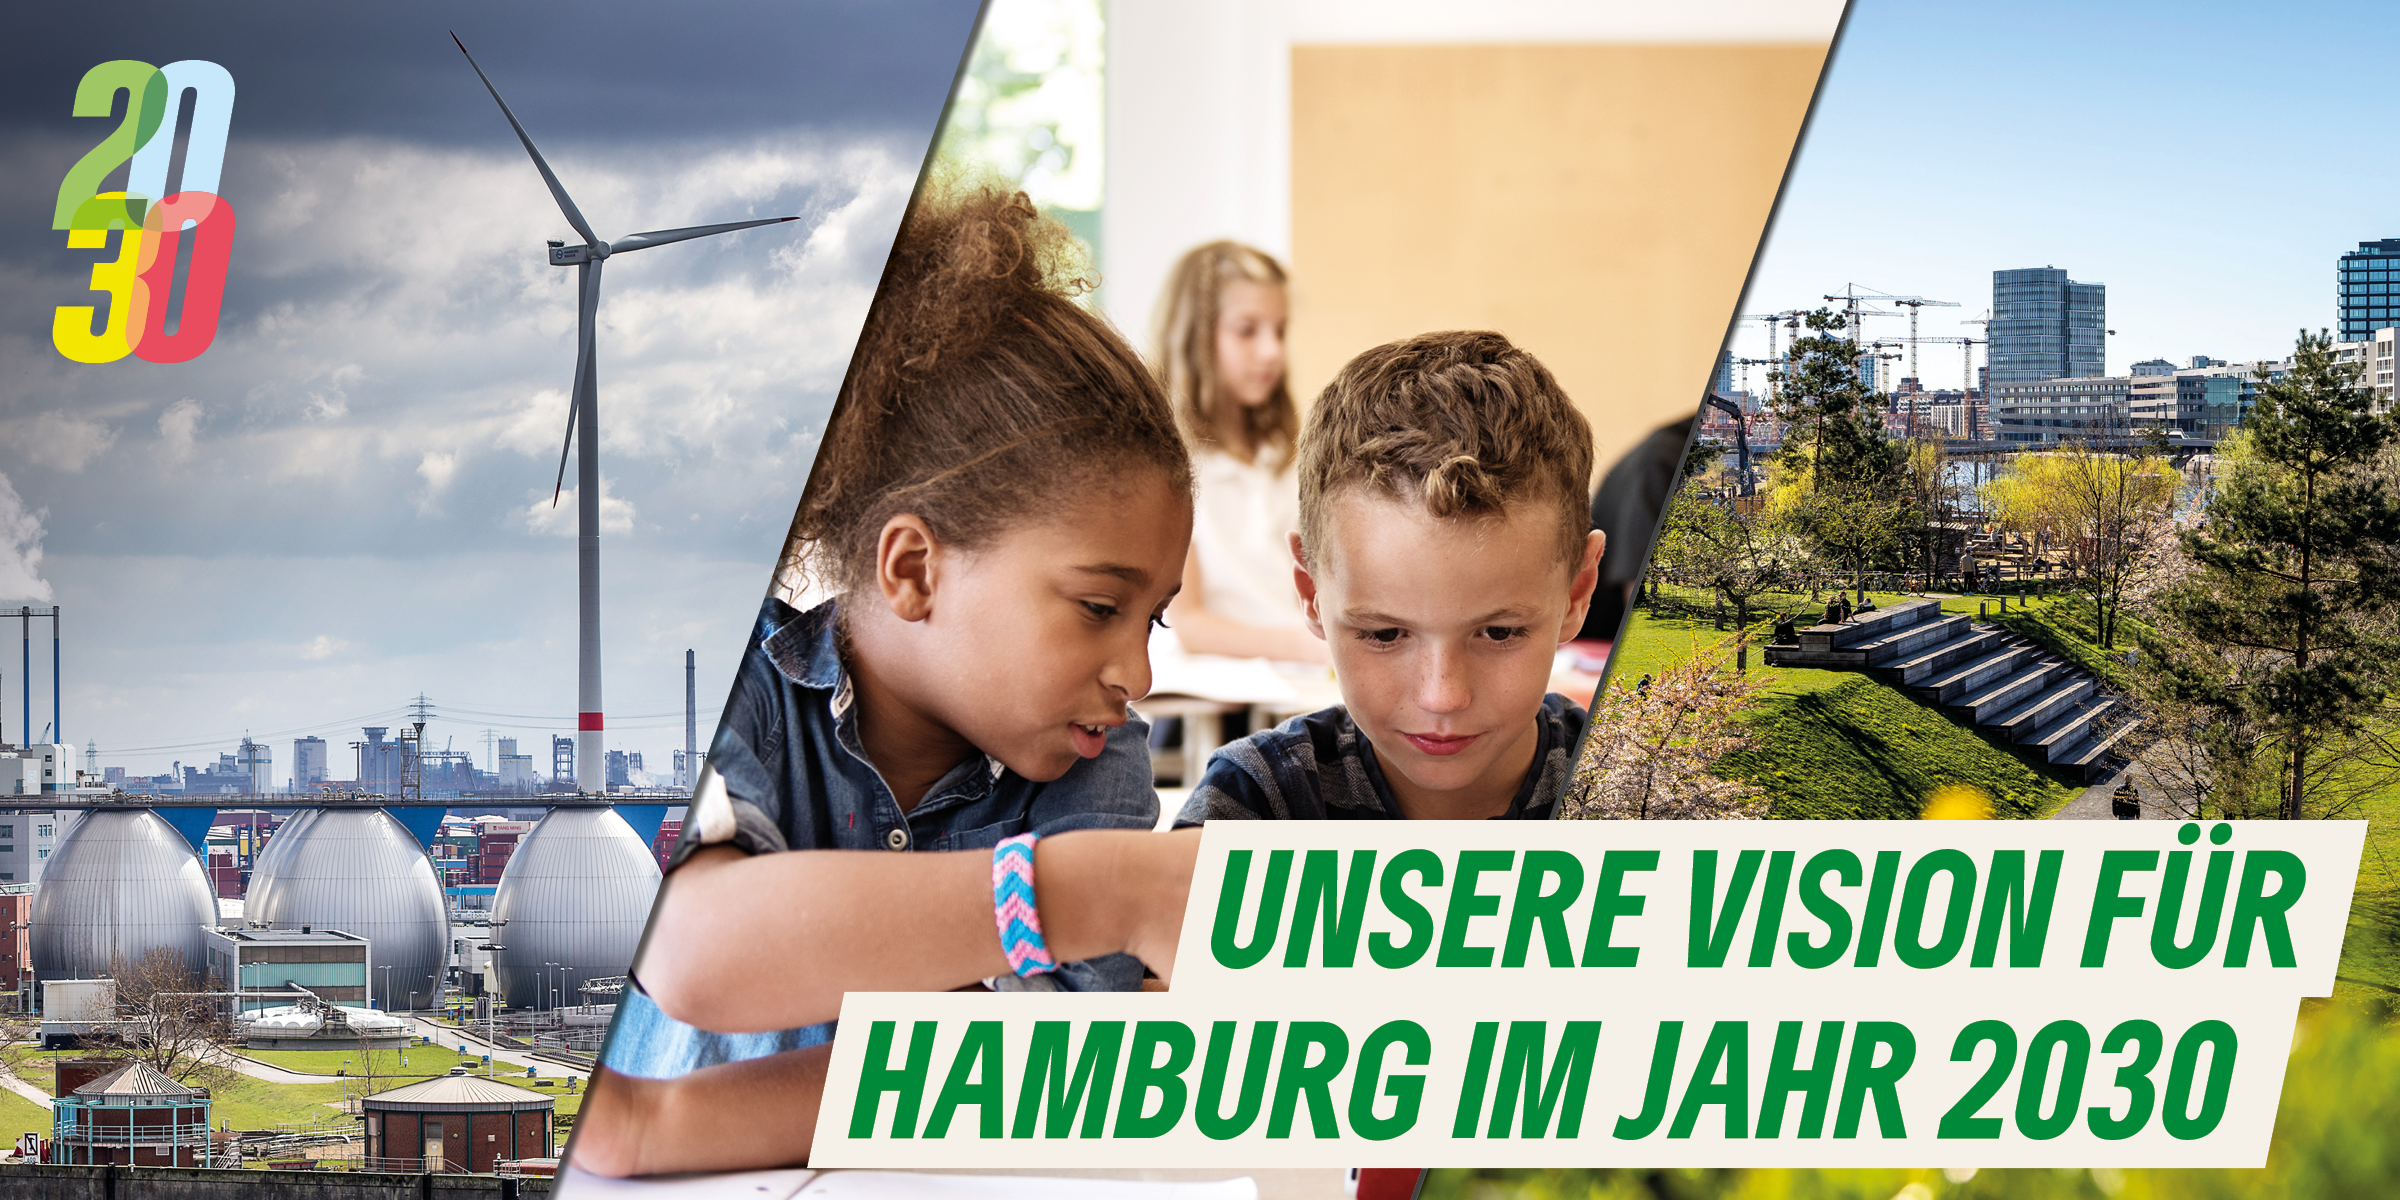 Unsere Vision für Hamburg im Jahr 2030